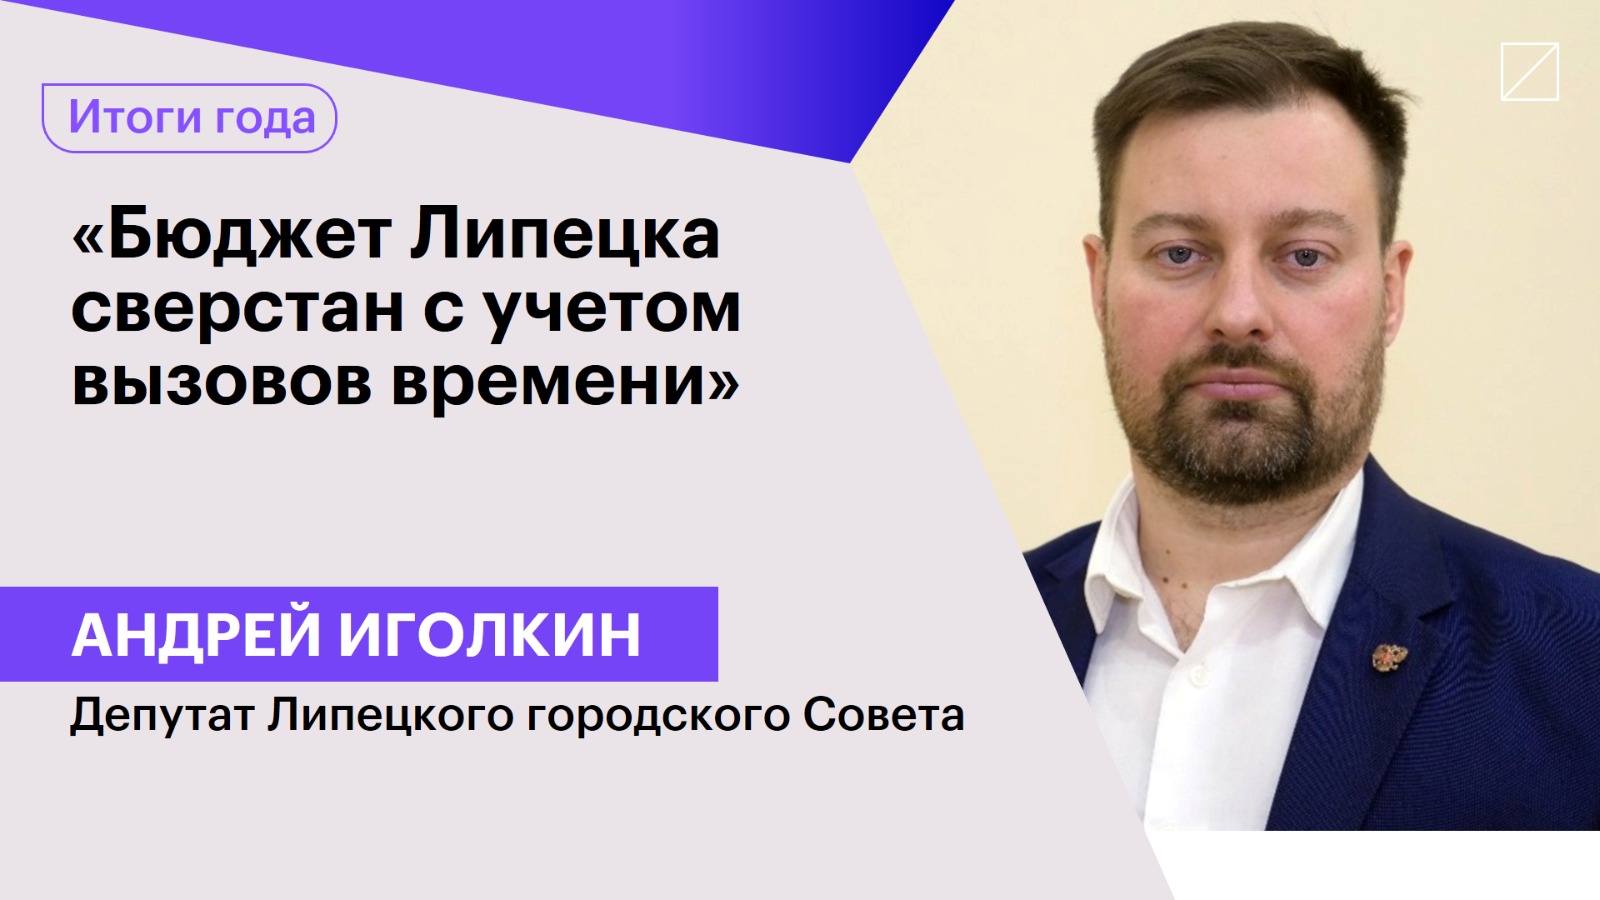 Андрей Иголкин: «Бюджет Липецка сверстан с учетом вызовов времени»